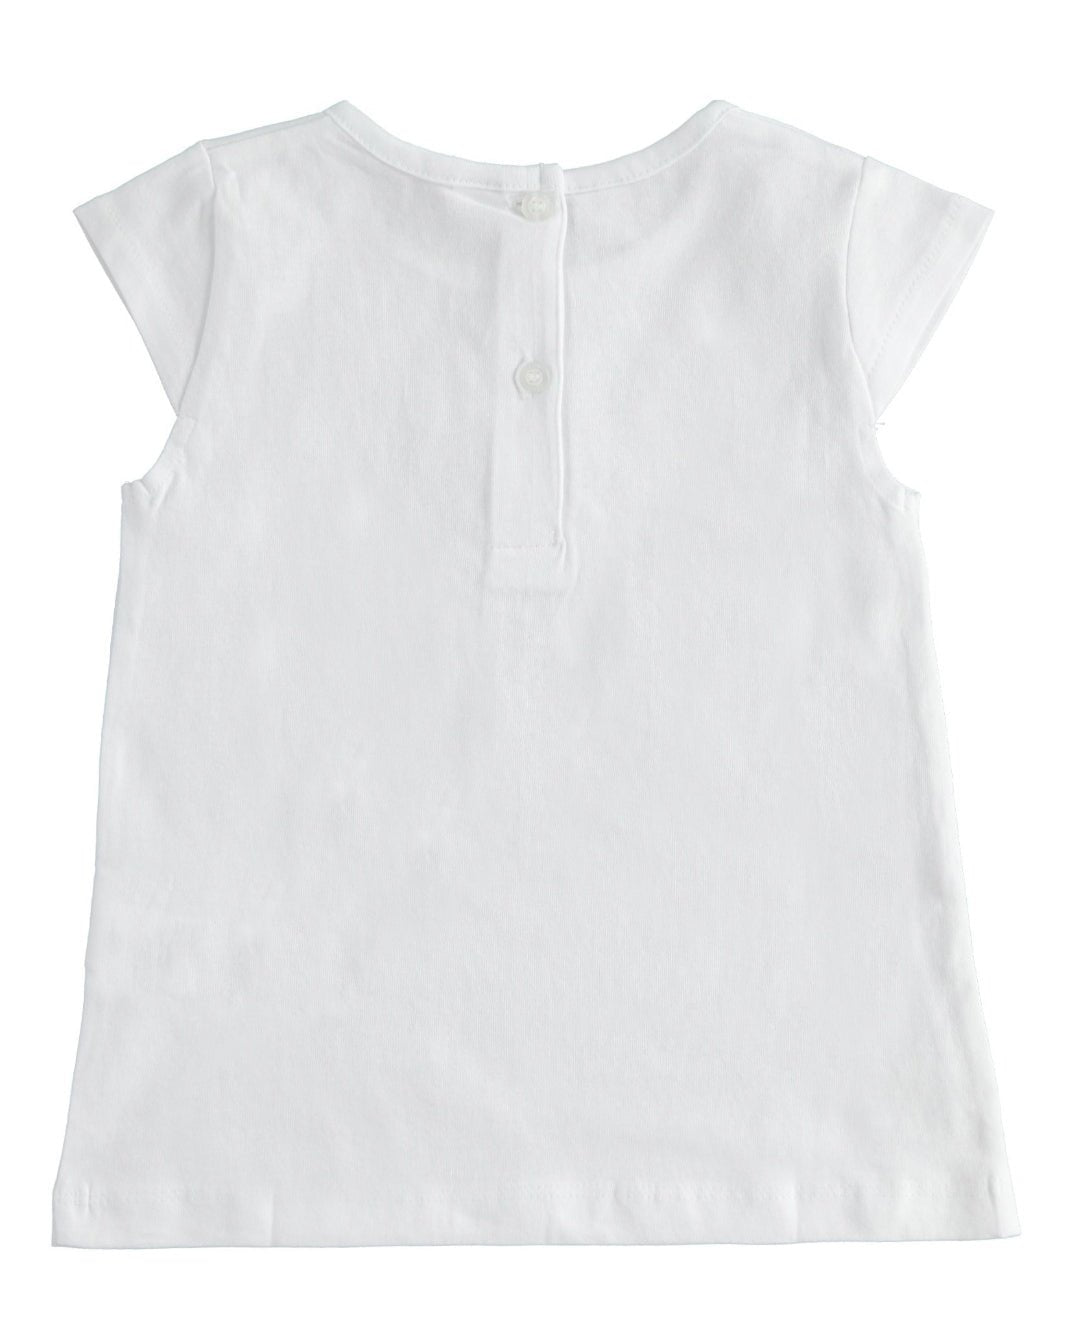 T-Shirt Cuori girobrillo - Coccole e Ricami |email: info@coccoleericami.shop| P.Iva 09642670583